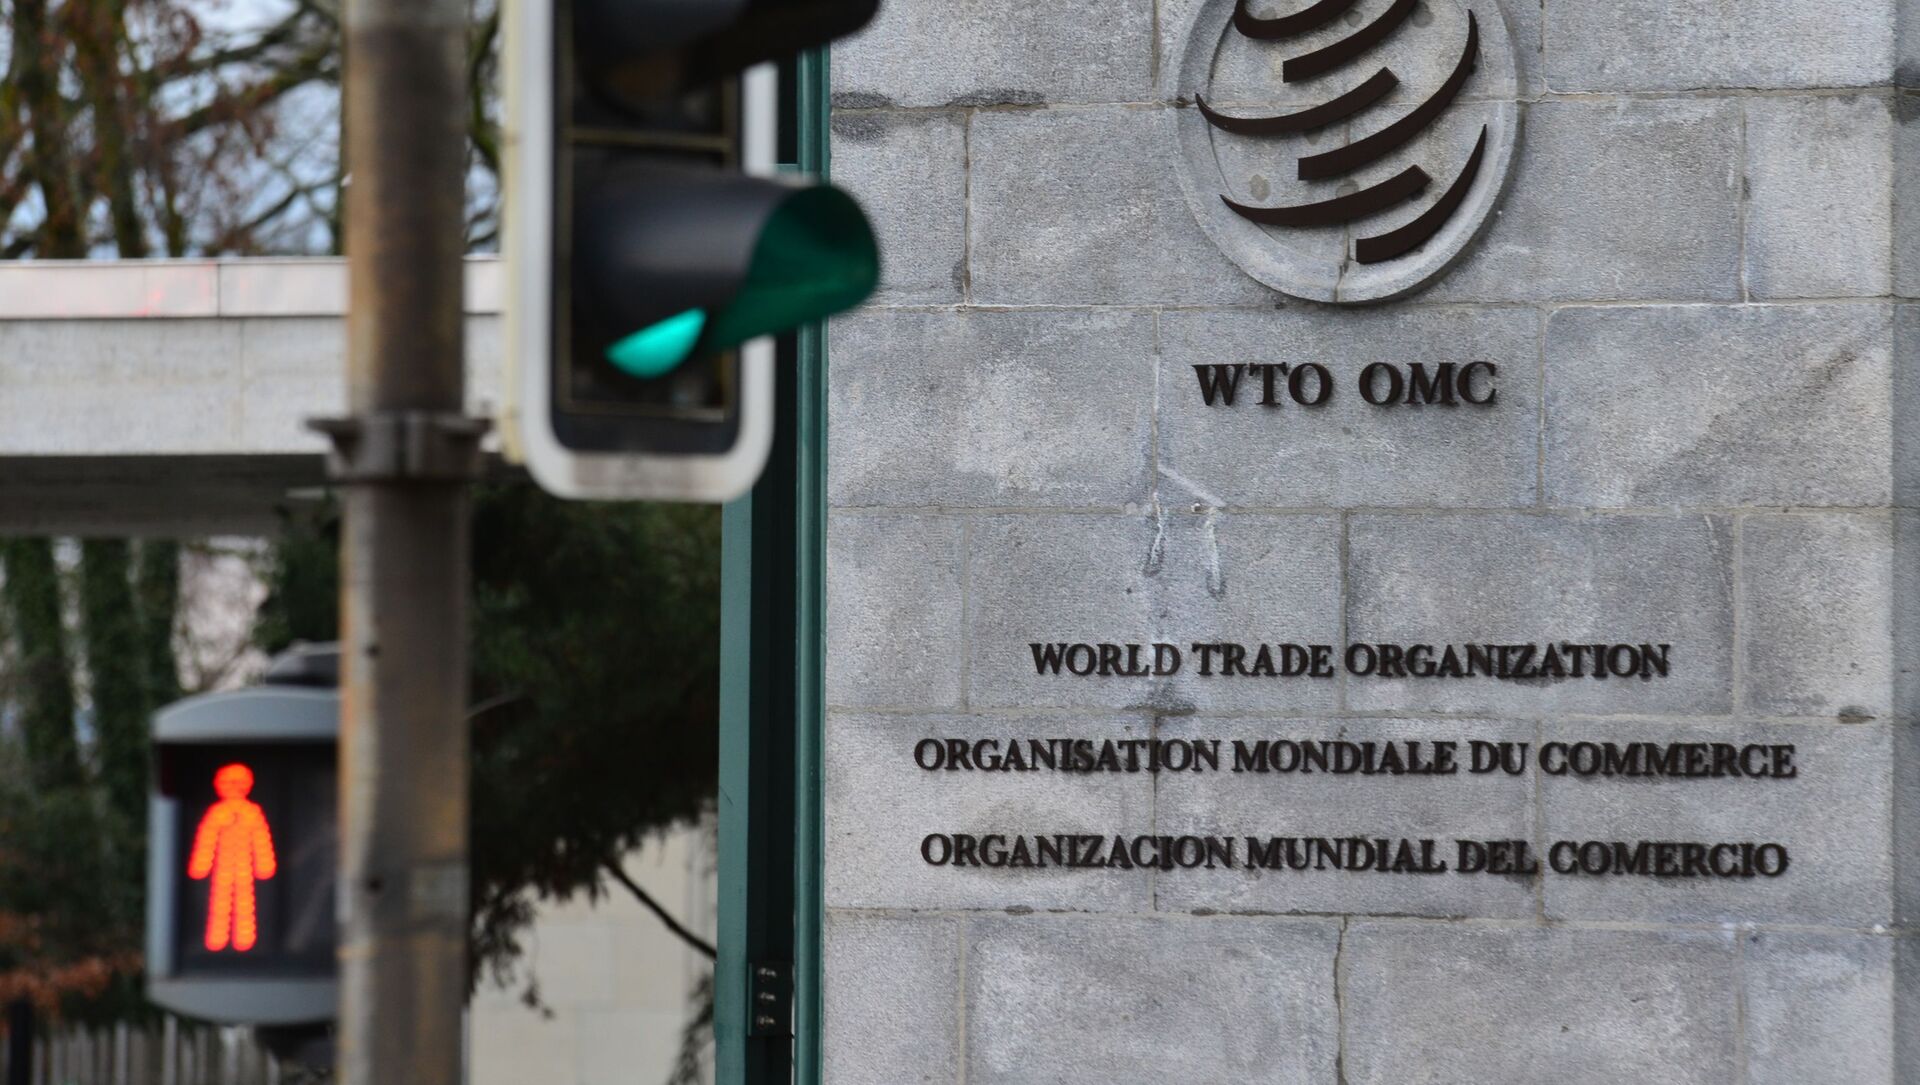 Эмблема Всемирной торговой организации (ВТО) возле здания штаб-квартиры организации в Женеве, фото из архива - Sputnik Азербайджан, 1920, 11.06.2021